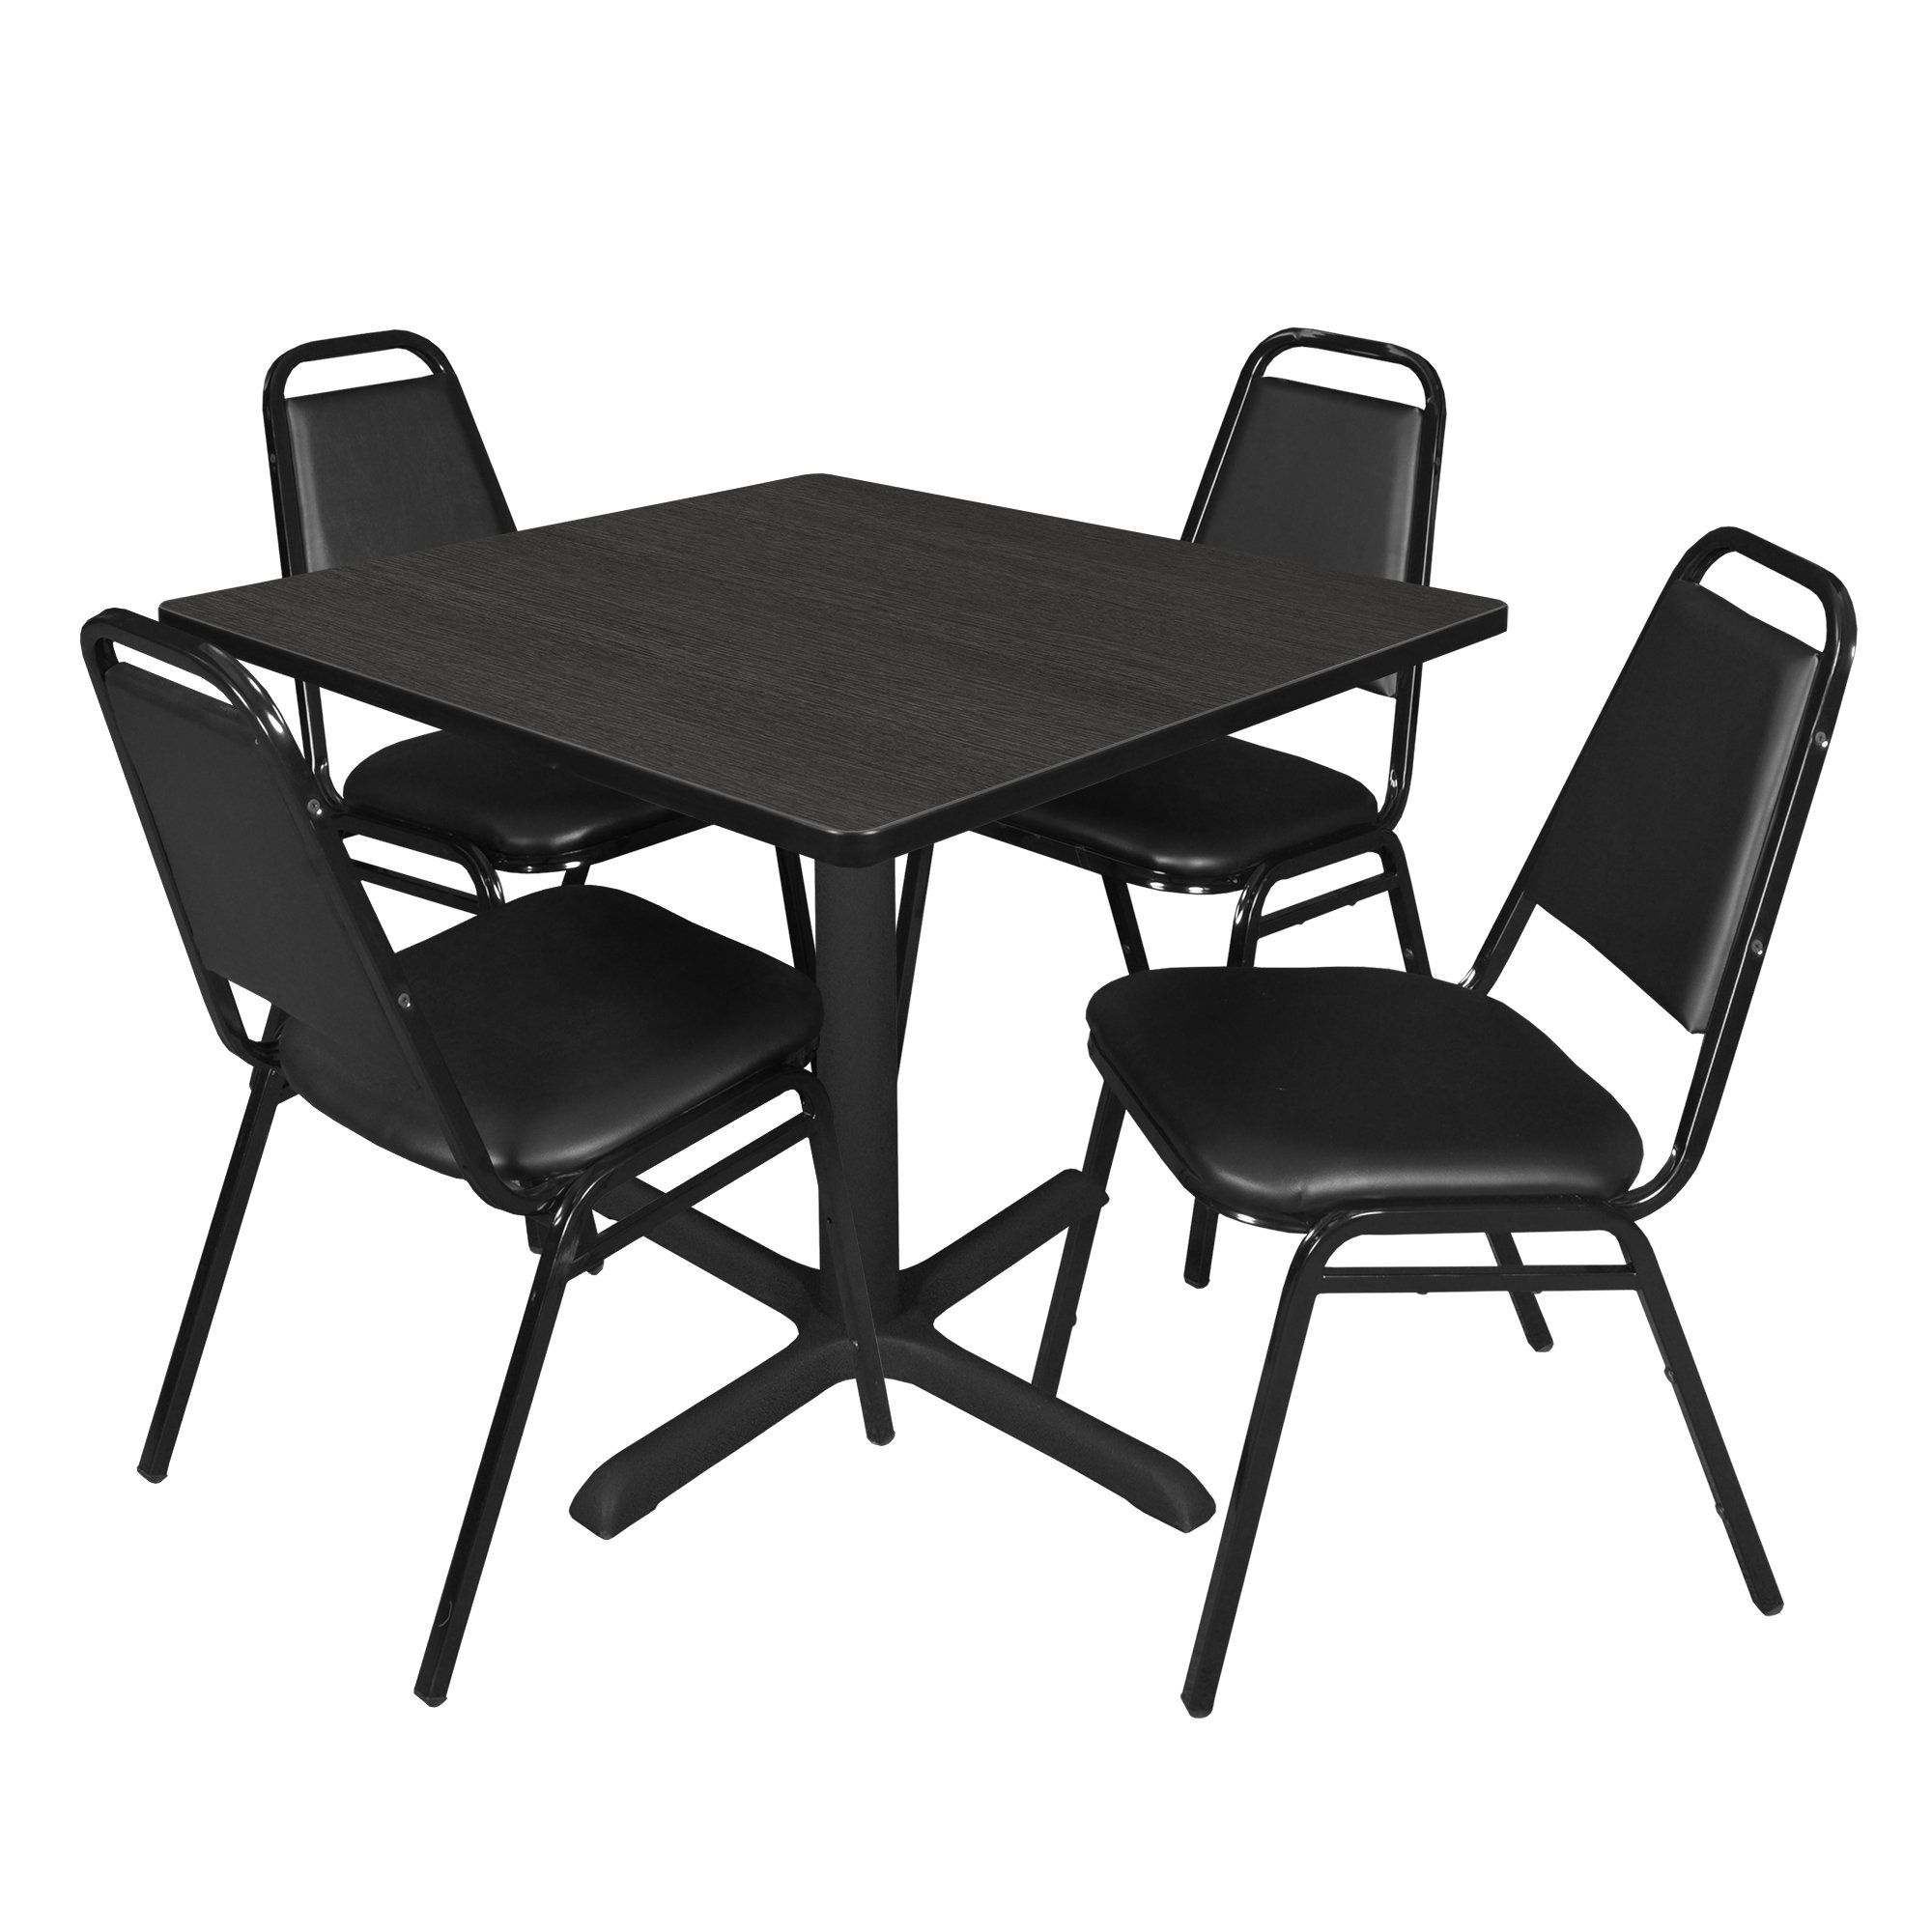 Regency Cain Square Breakroom Table & 4 Restaurant Stack Chairs | Wayfair Regarding Regency Cain Steel Coffee Tables (View 10 of 15)